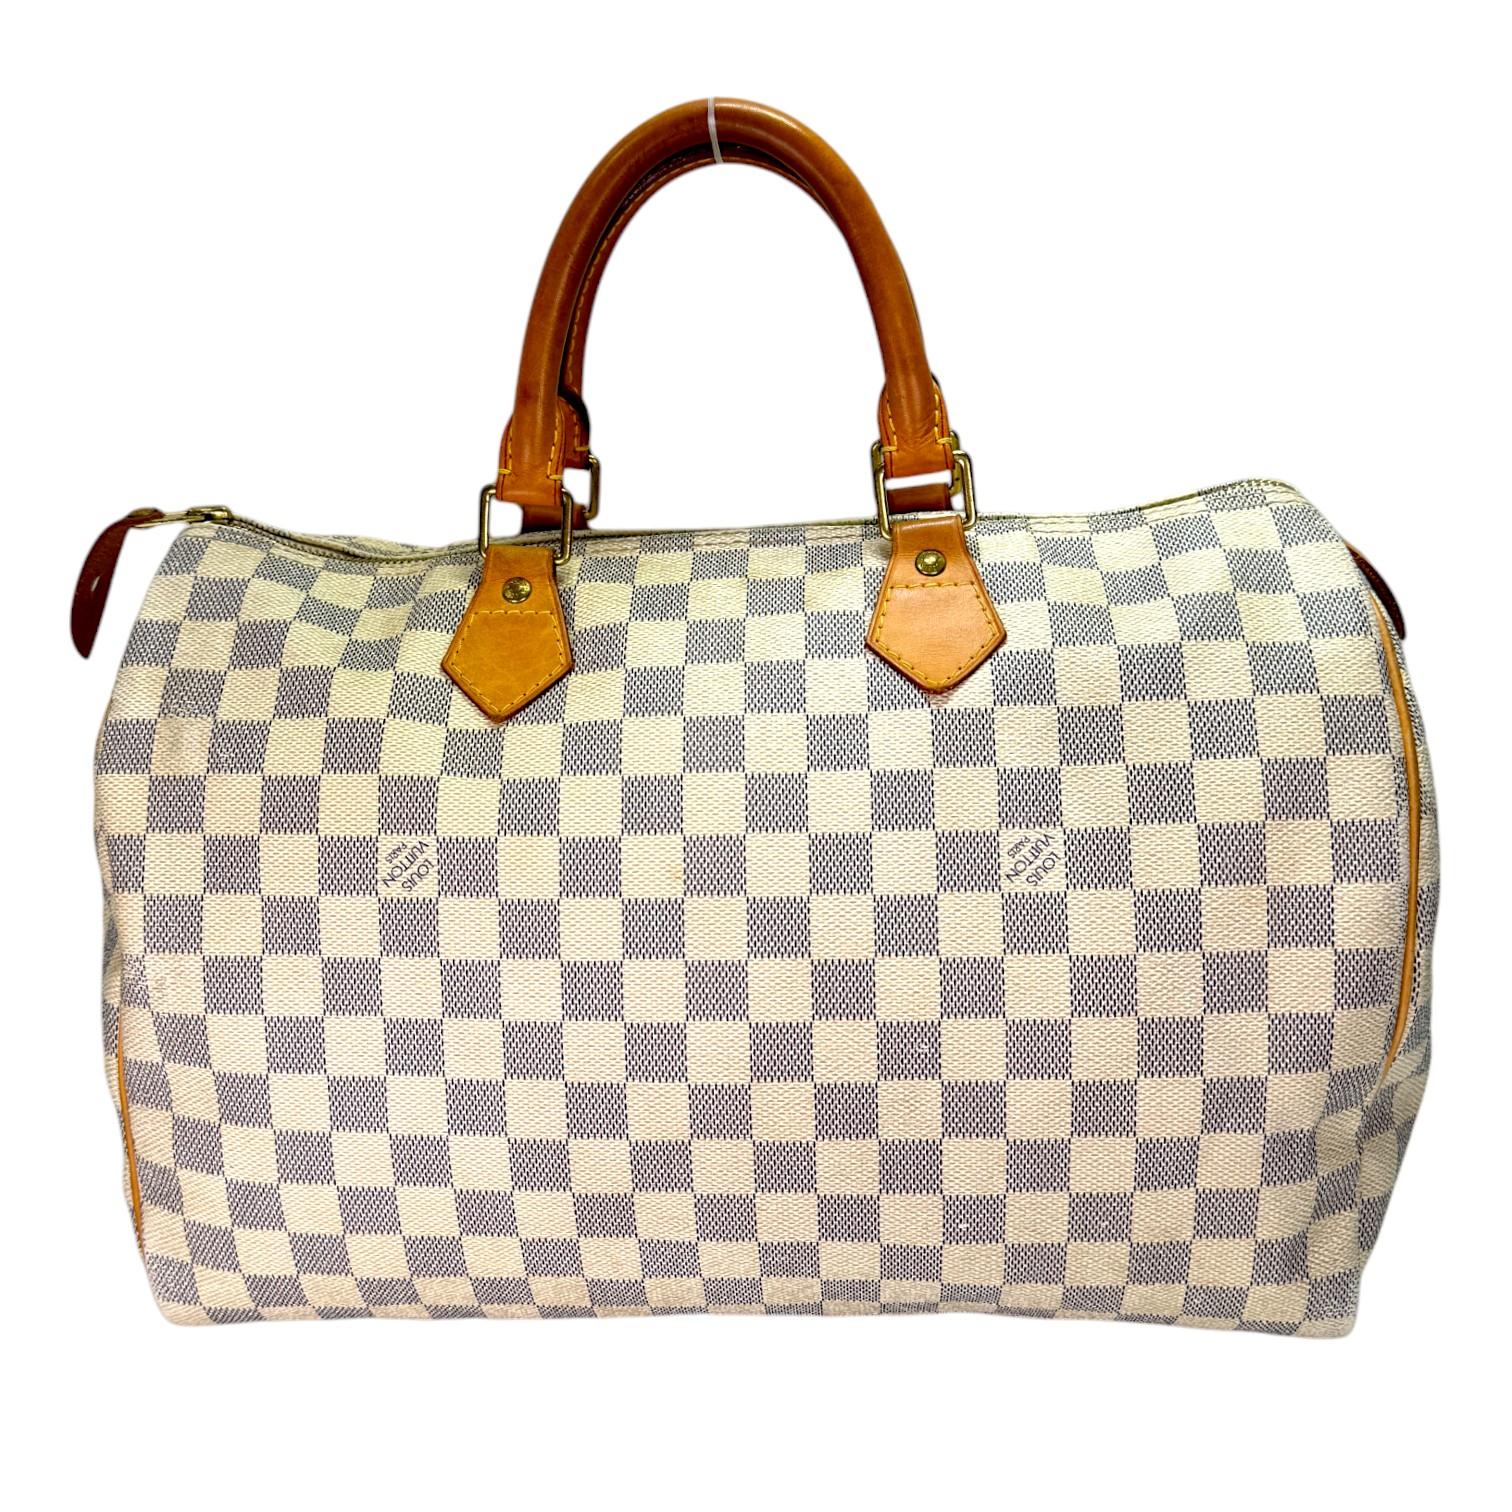 Authentic estate Louis Vuitton Speedy 35 Damier Azur bag